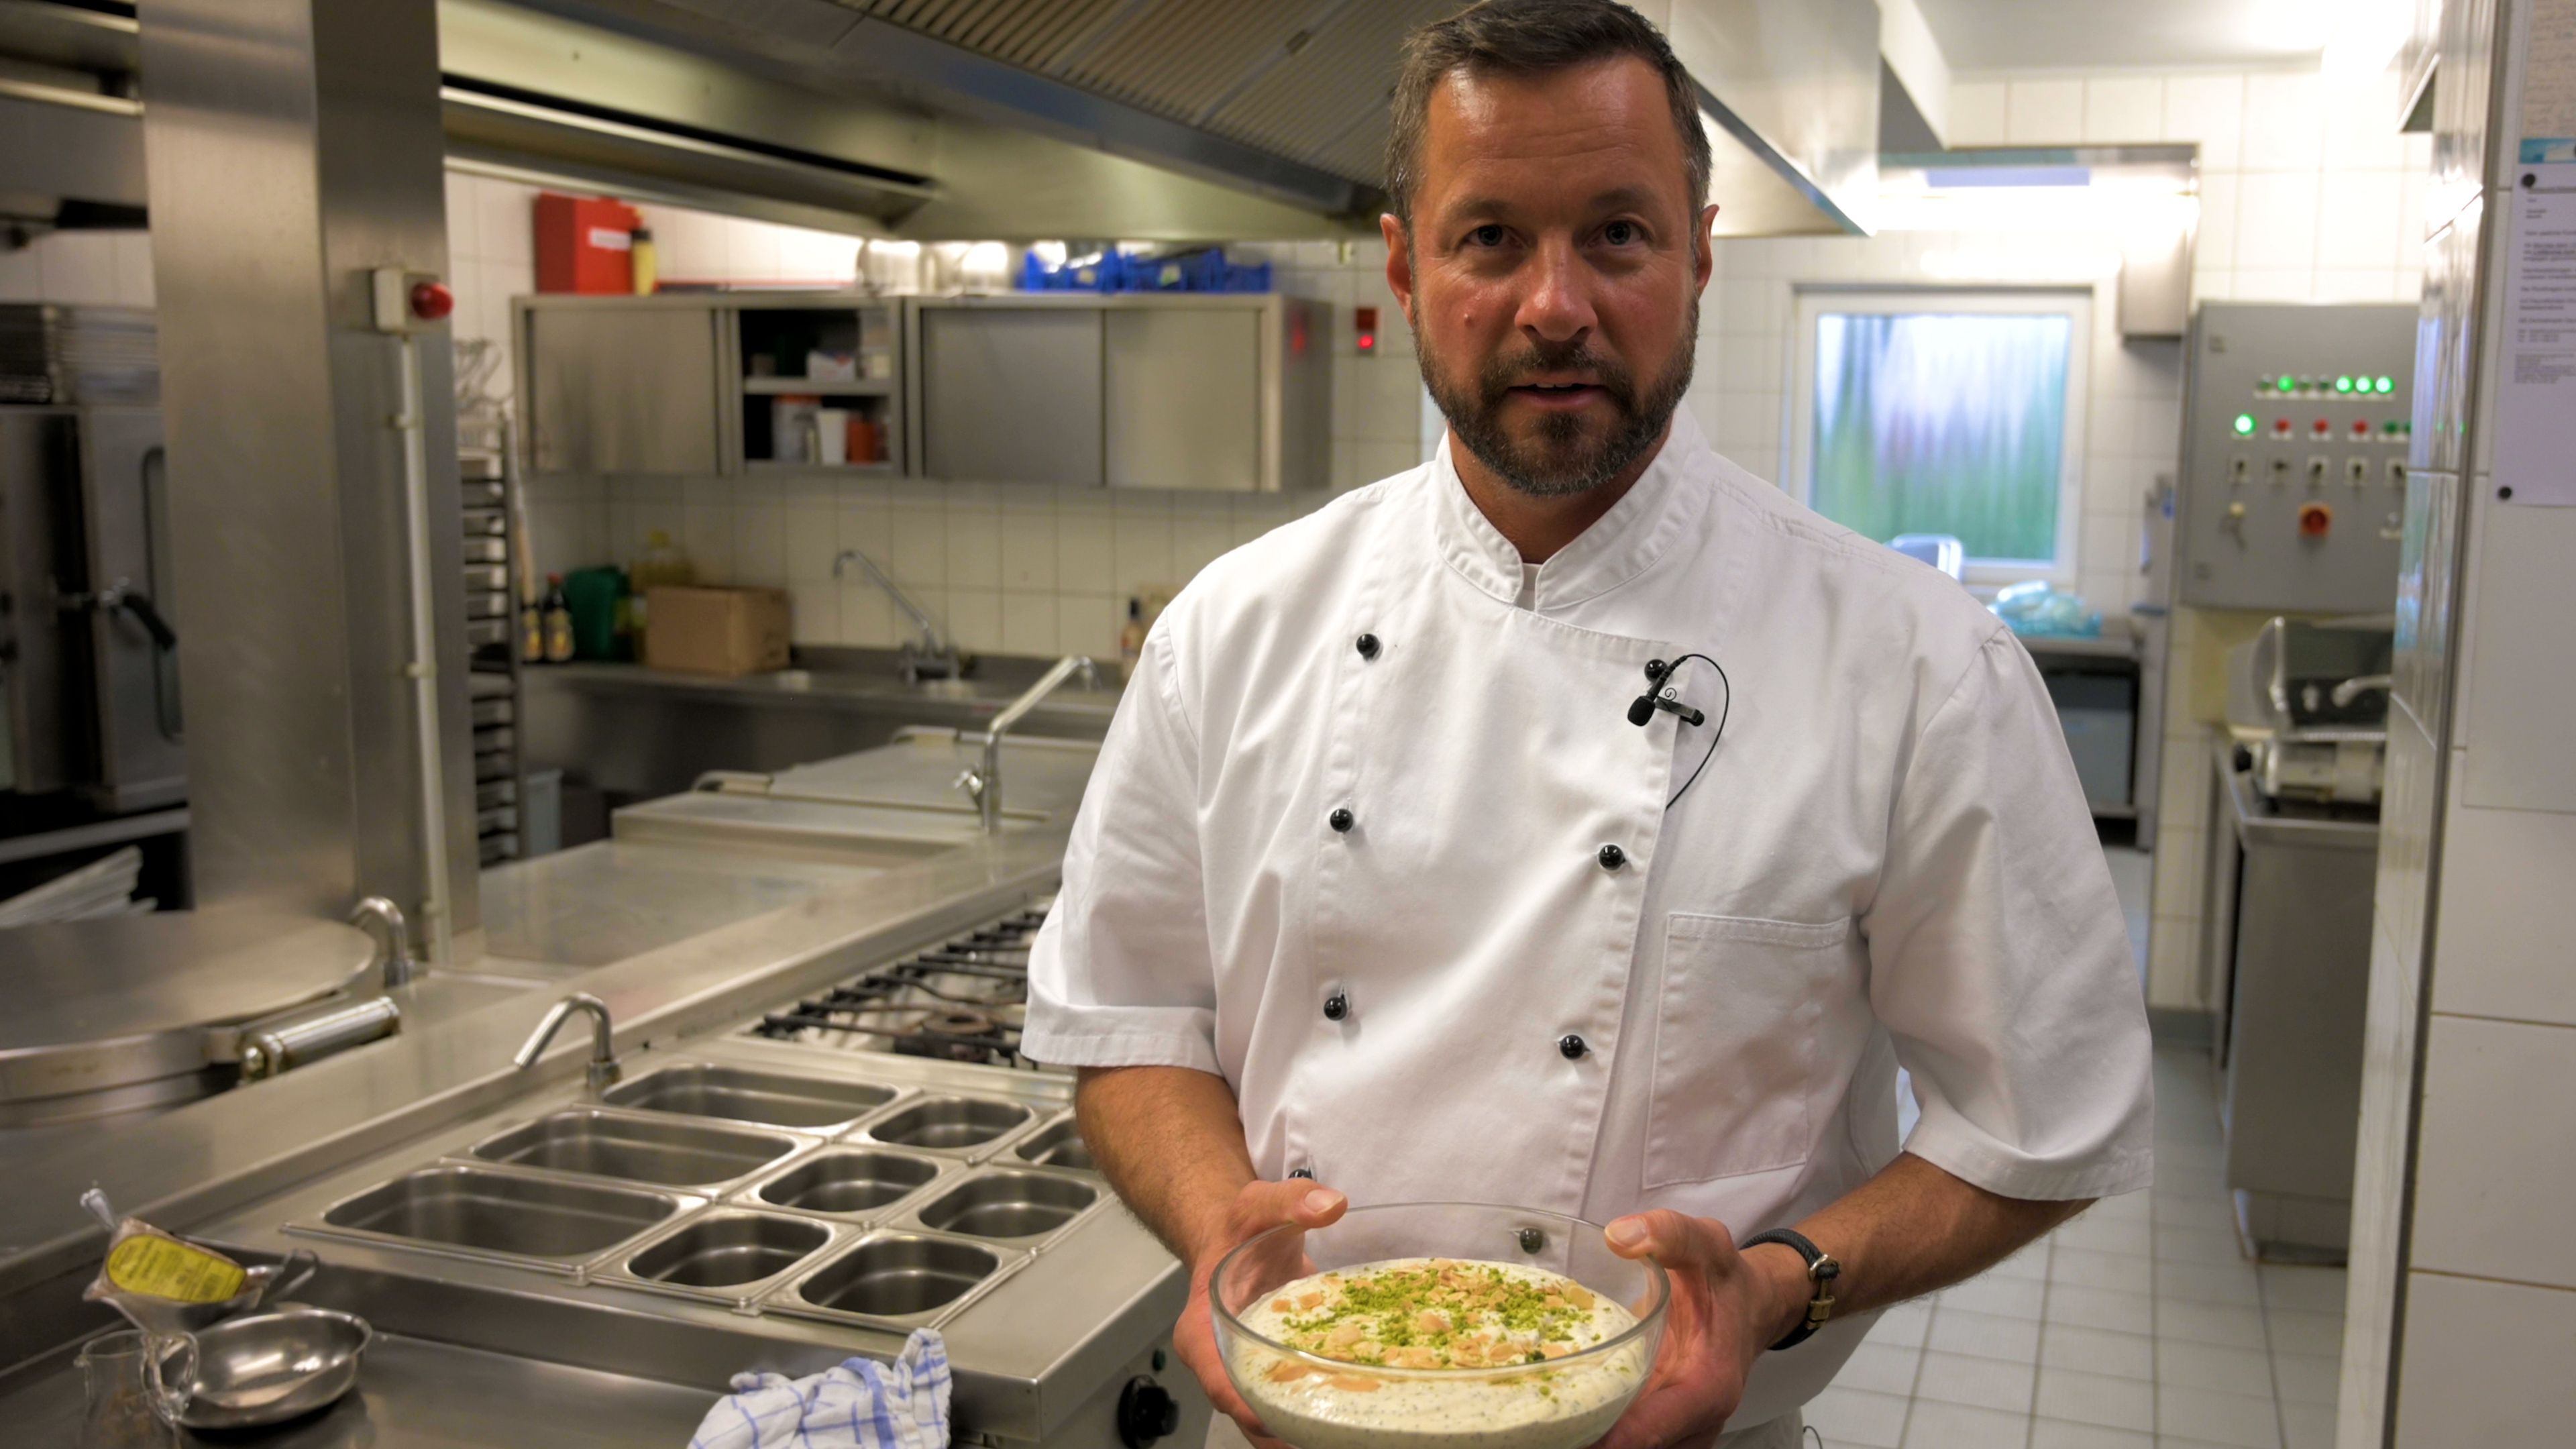 Küchenchef Bernd Schomaker verrät seine Dessert-Idee für die Feiertage. Foto: Duzat